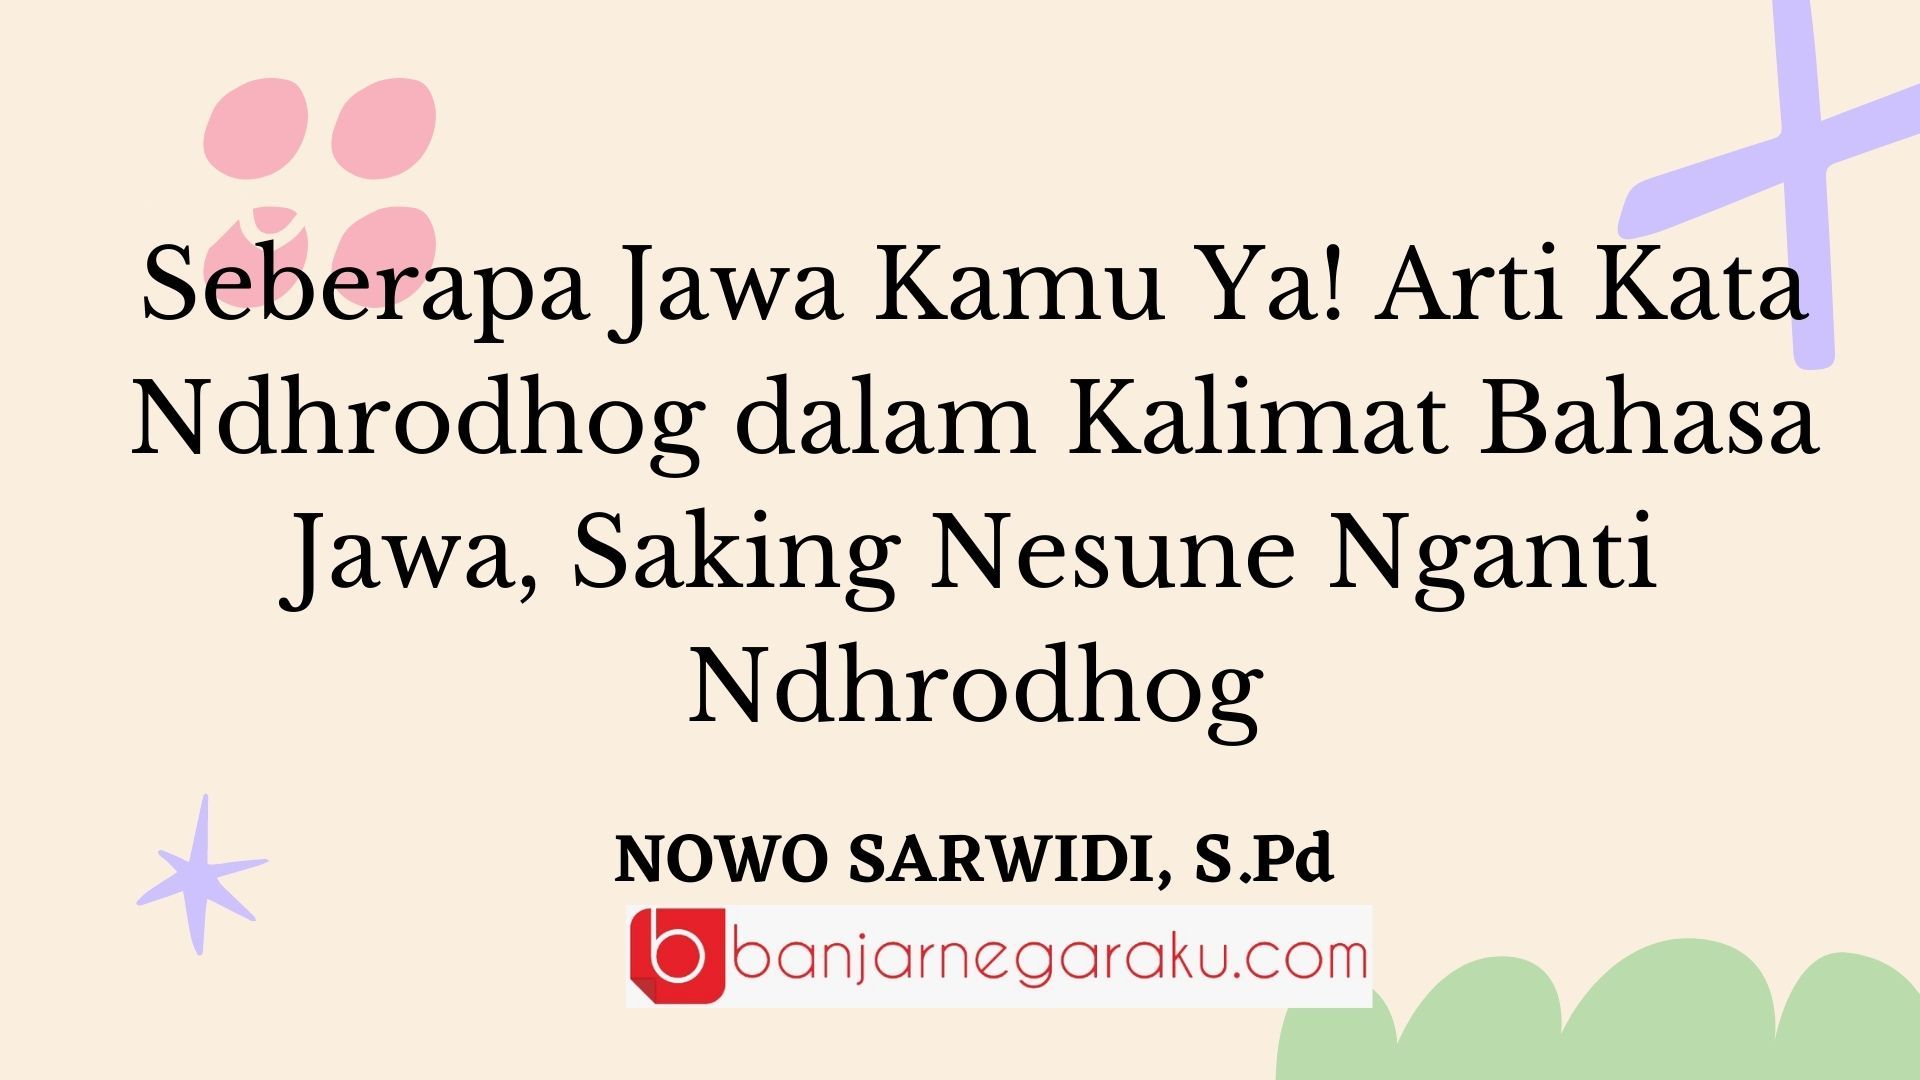 Seberapa Jawa Kamu Ya! Arti Kata Ndhrodhog dalam Kalimat Bahasa Jawa, Saking Nesune Nganti Ndhrodhog